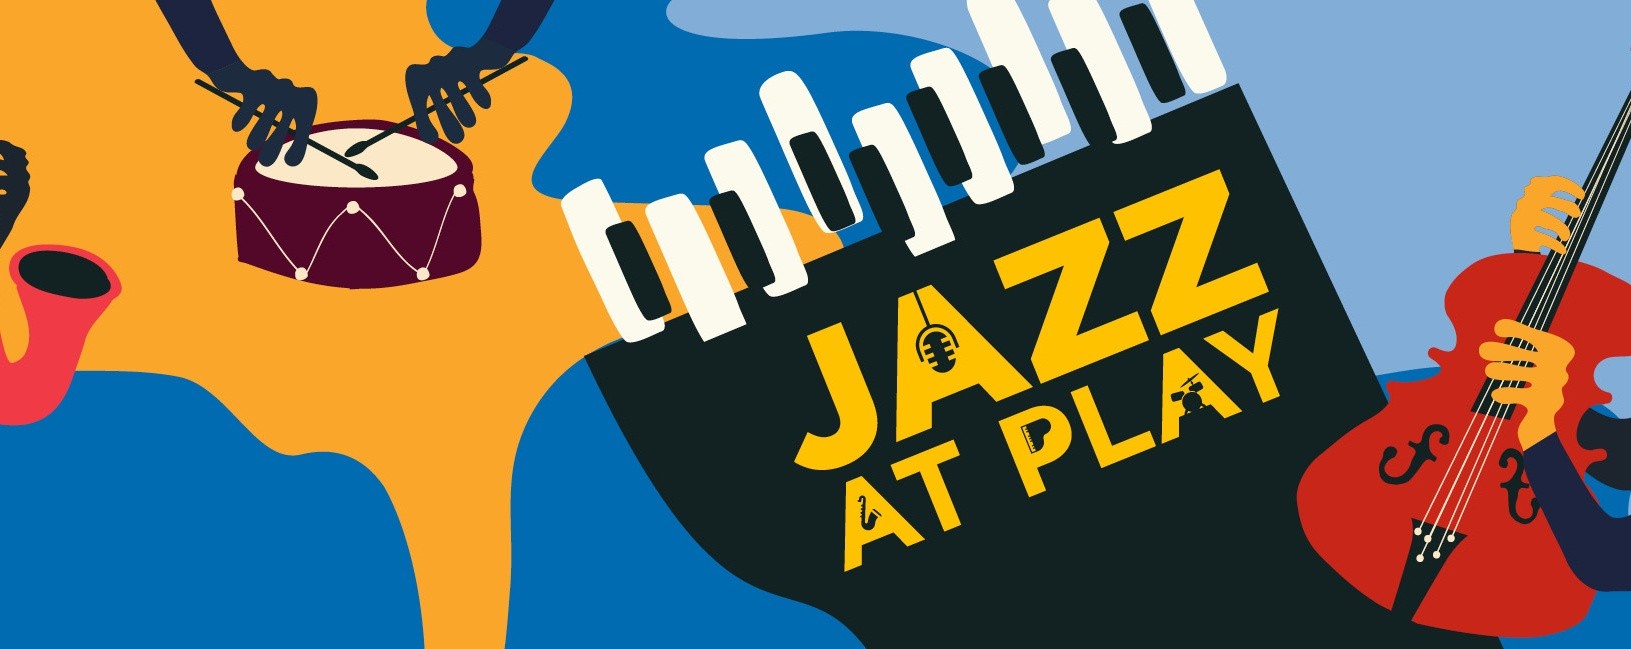 Jazz at Play: 7 Songs at Christmas